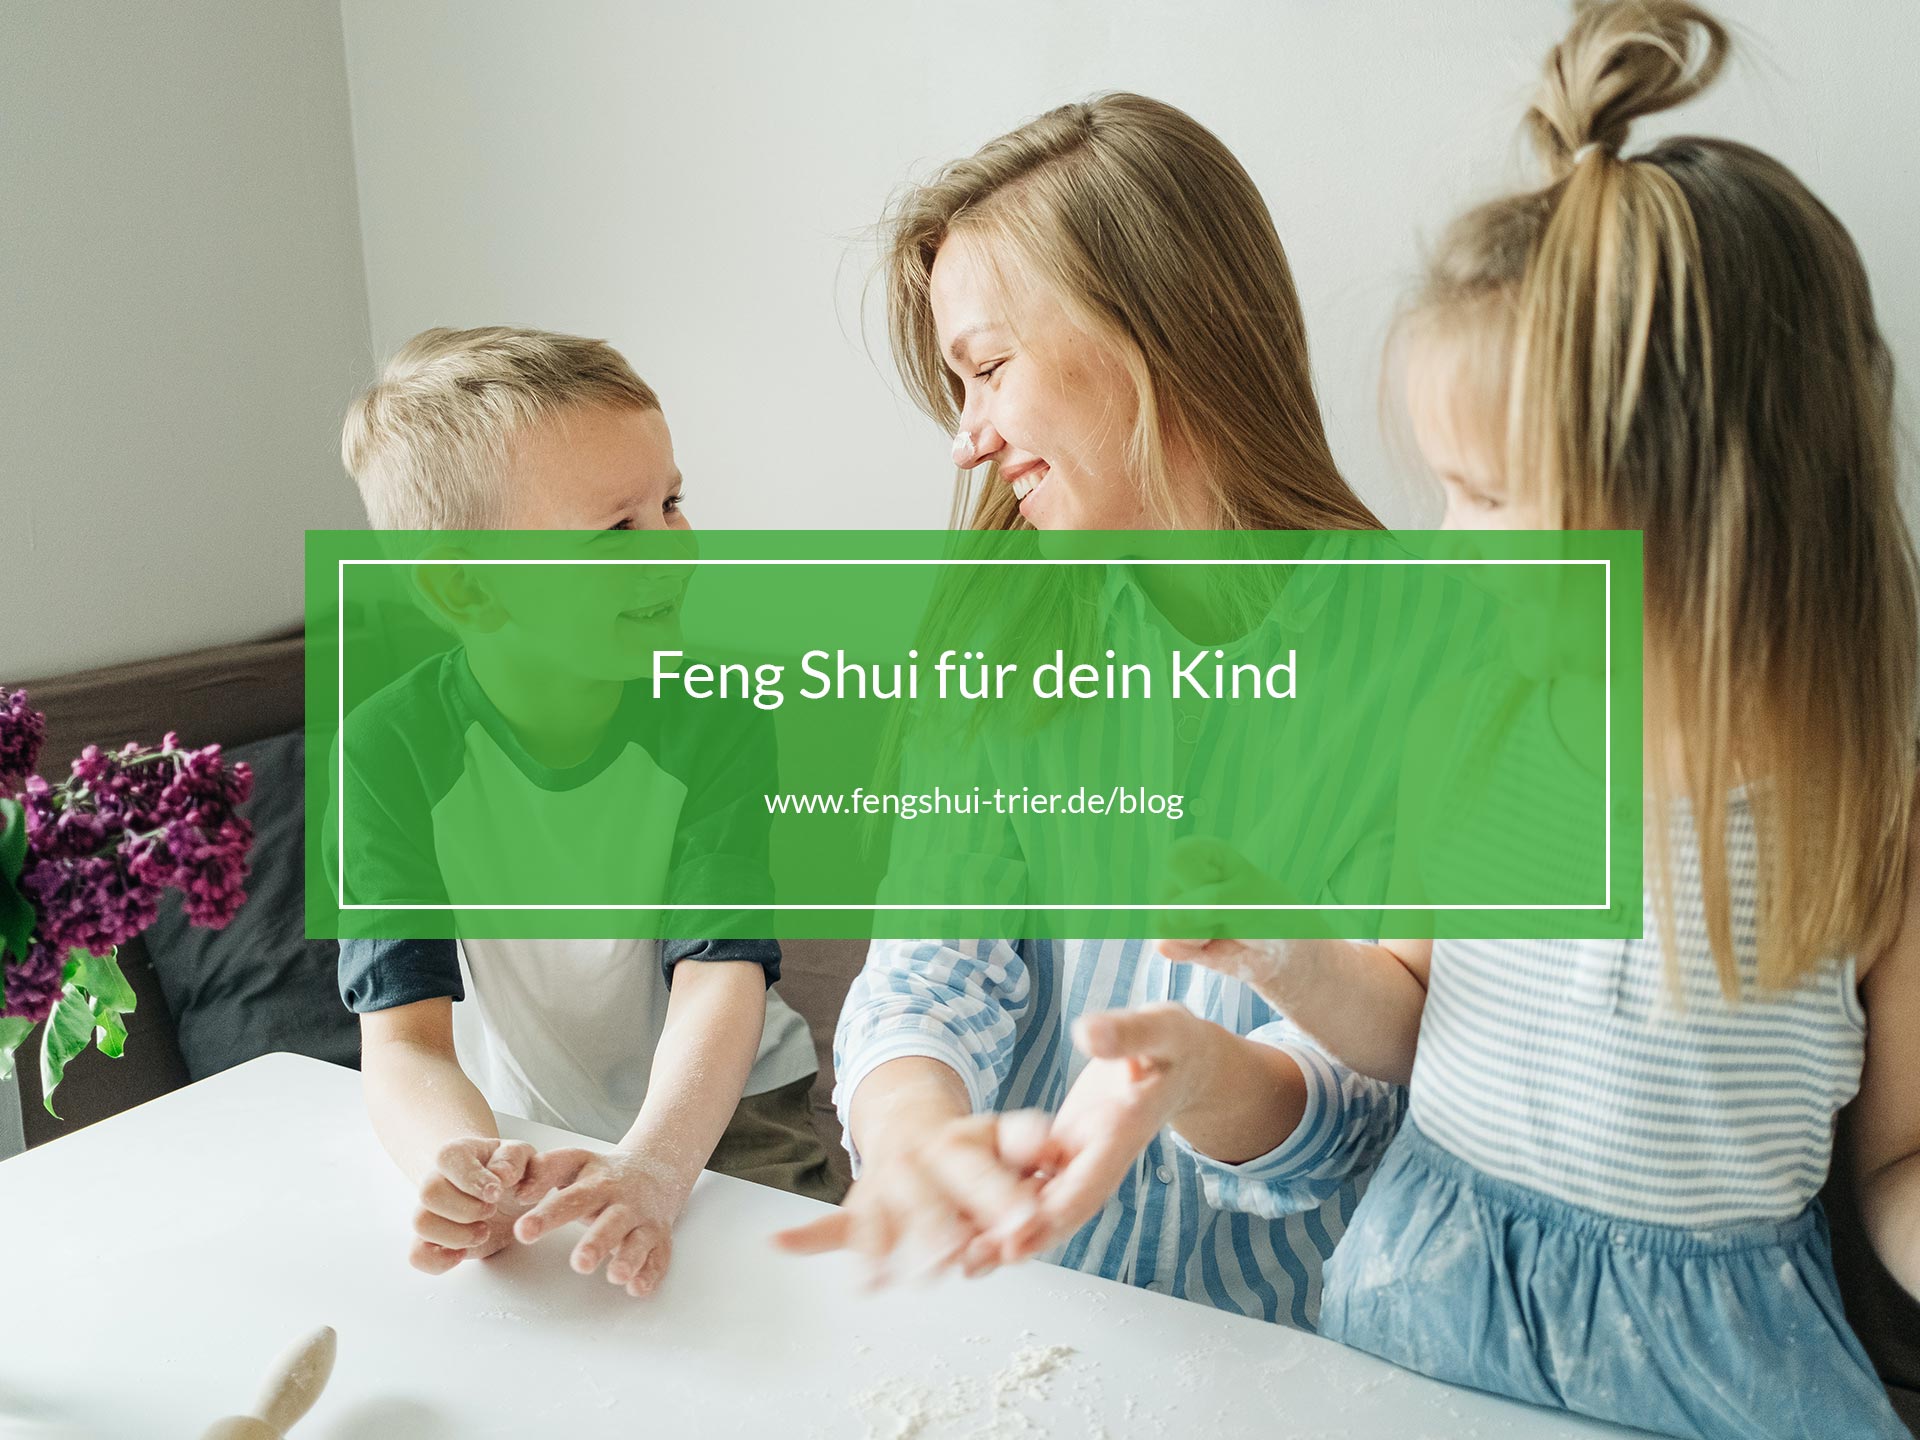 Feng Shui für dein Kind